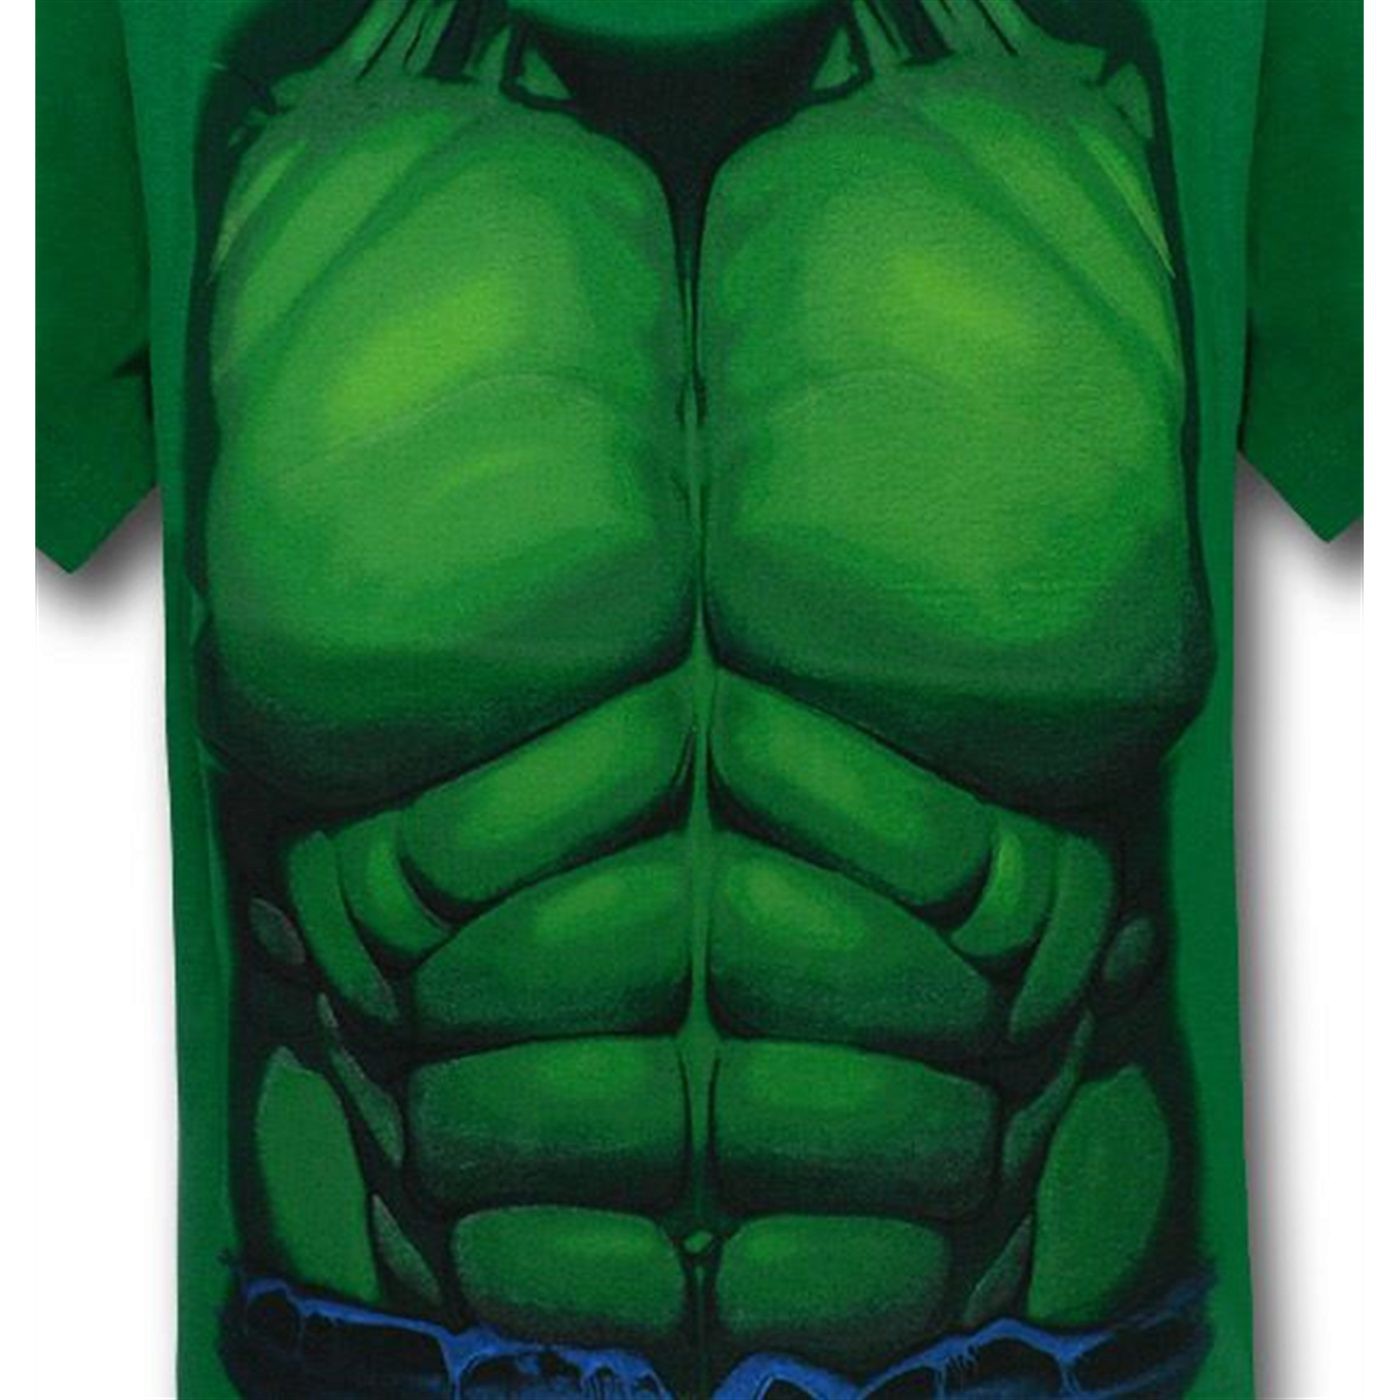 Hulk Kids Costume T-Shirt